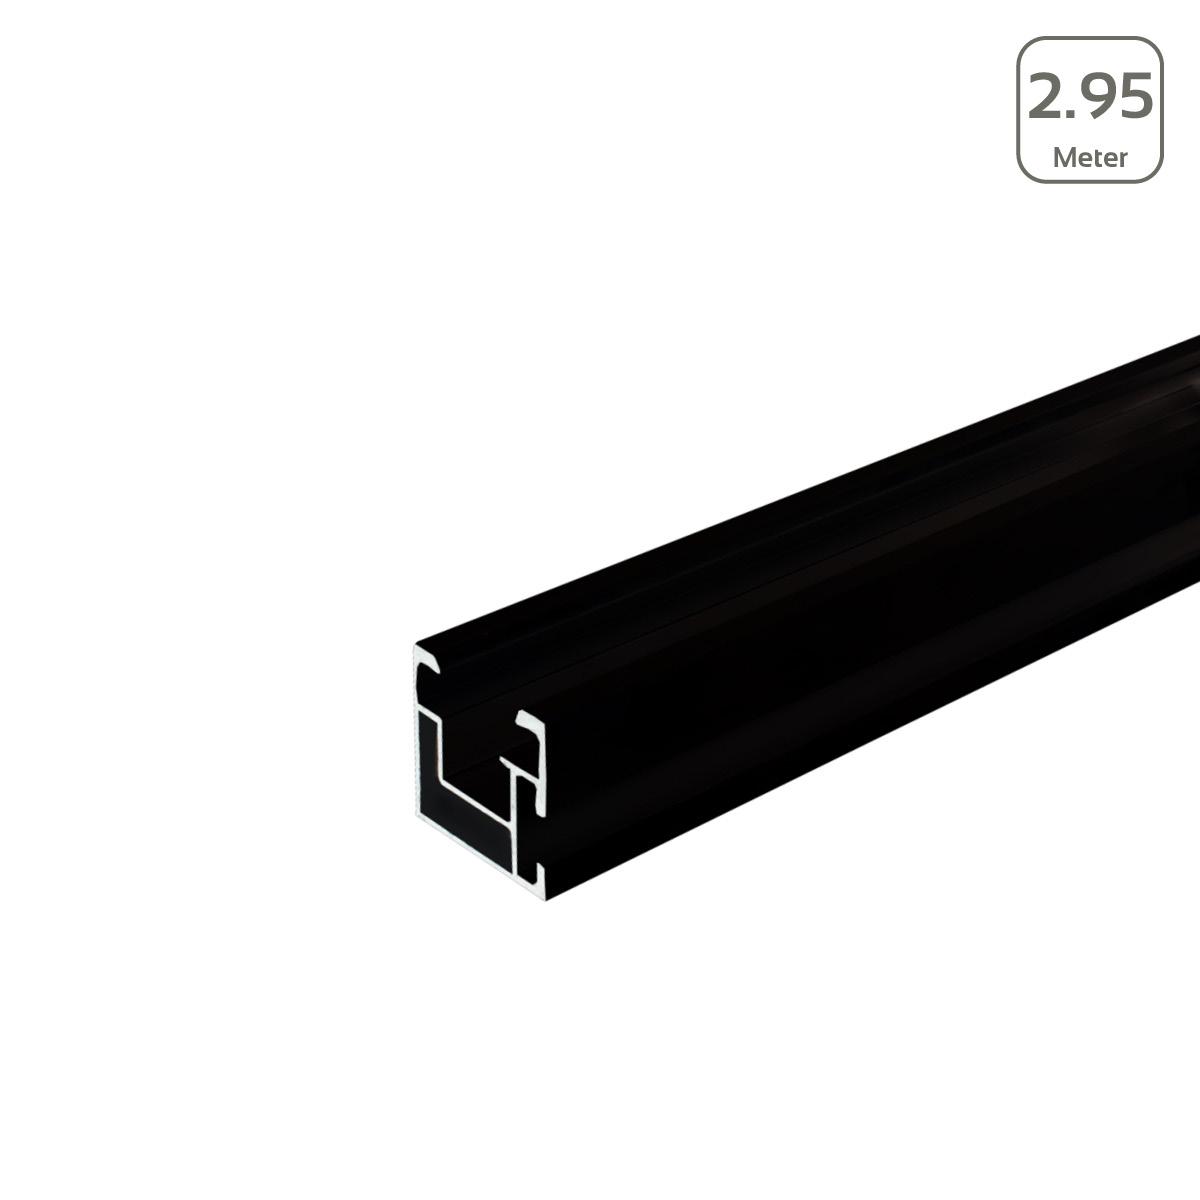 Avanti Profil schwarz eloxiert mit seitlicher Anbindung/Hammerkopfschr. M10 - Länge: 2,95 Meter - MwSt: 19% für Geschäftskunden